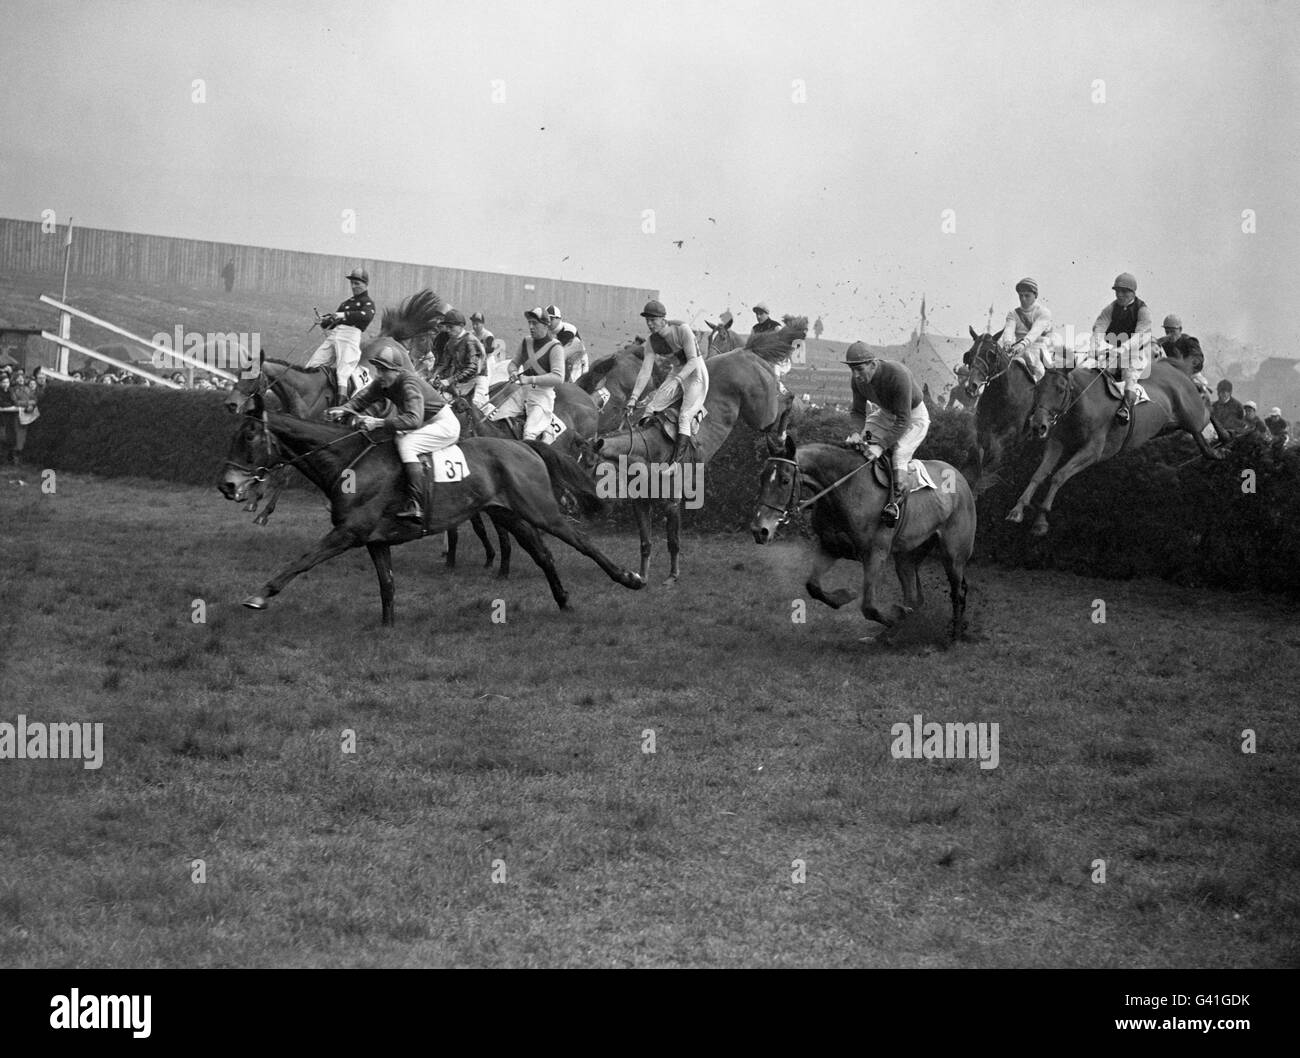 Corse di cavalli - Il Grand National - L'Aintree Racecourse Foto Stock